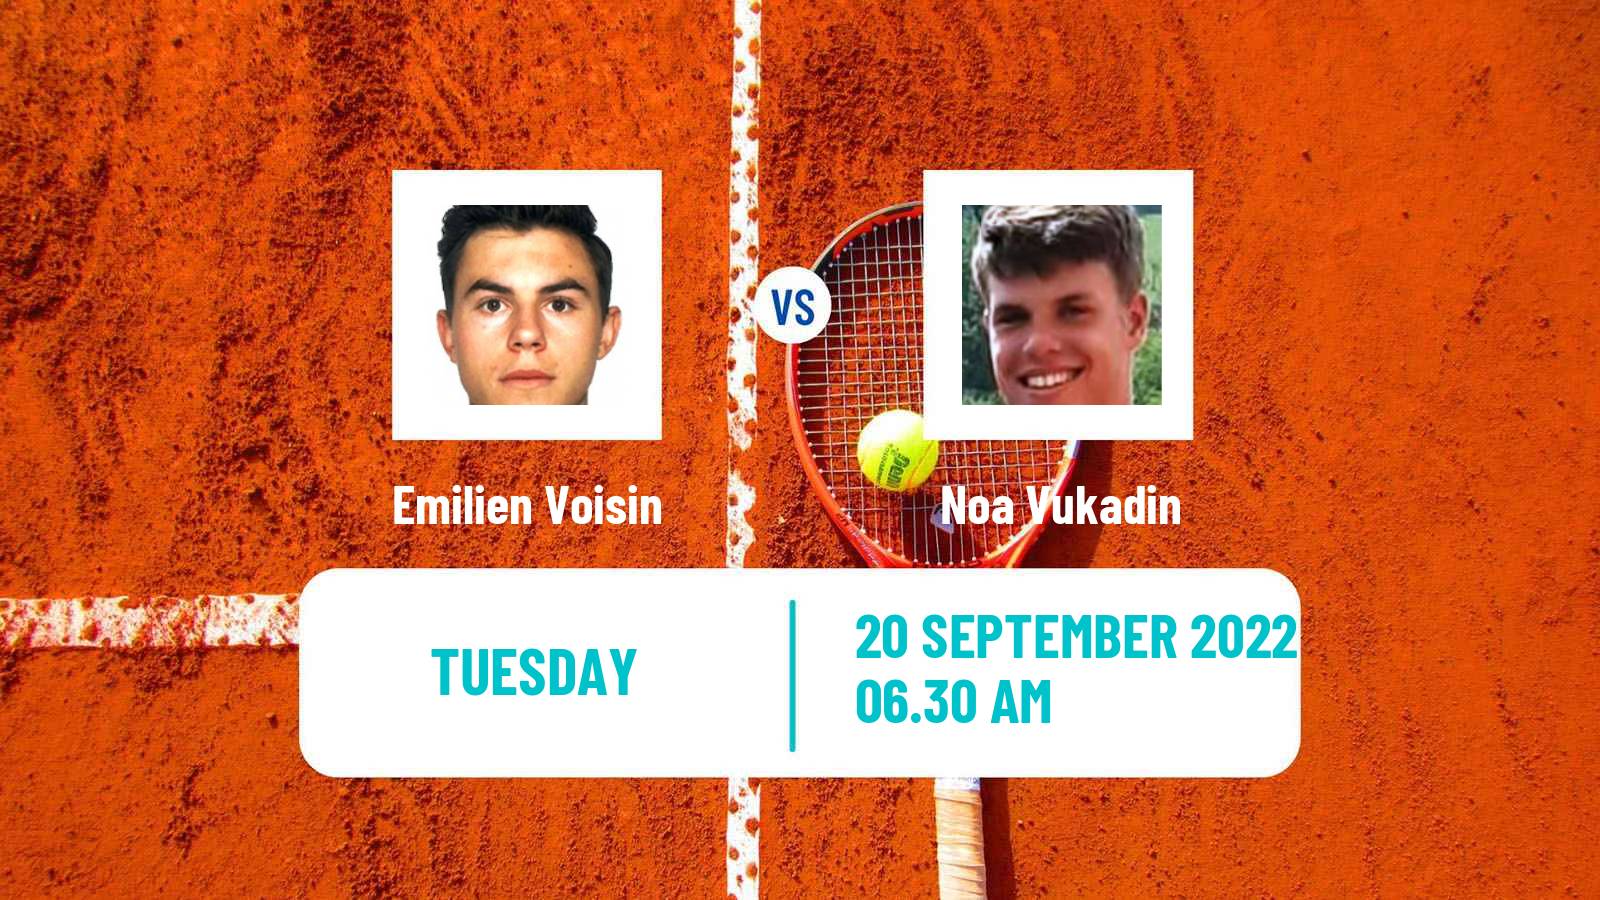 Tennis ITF Tournaments Emilien Voisin - Noa Vukadin